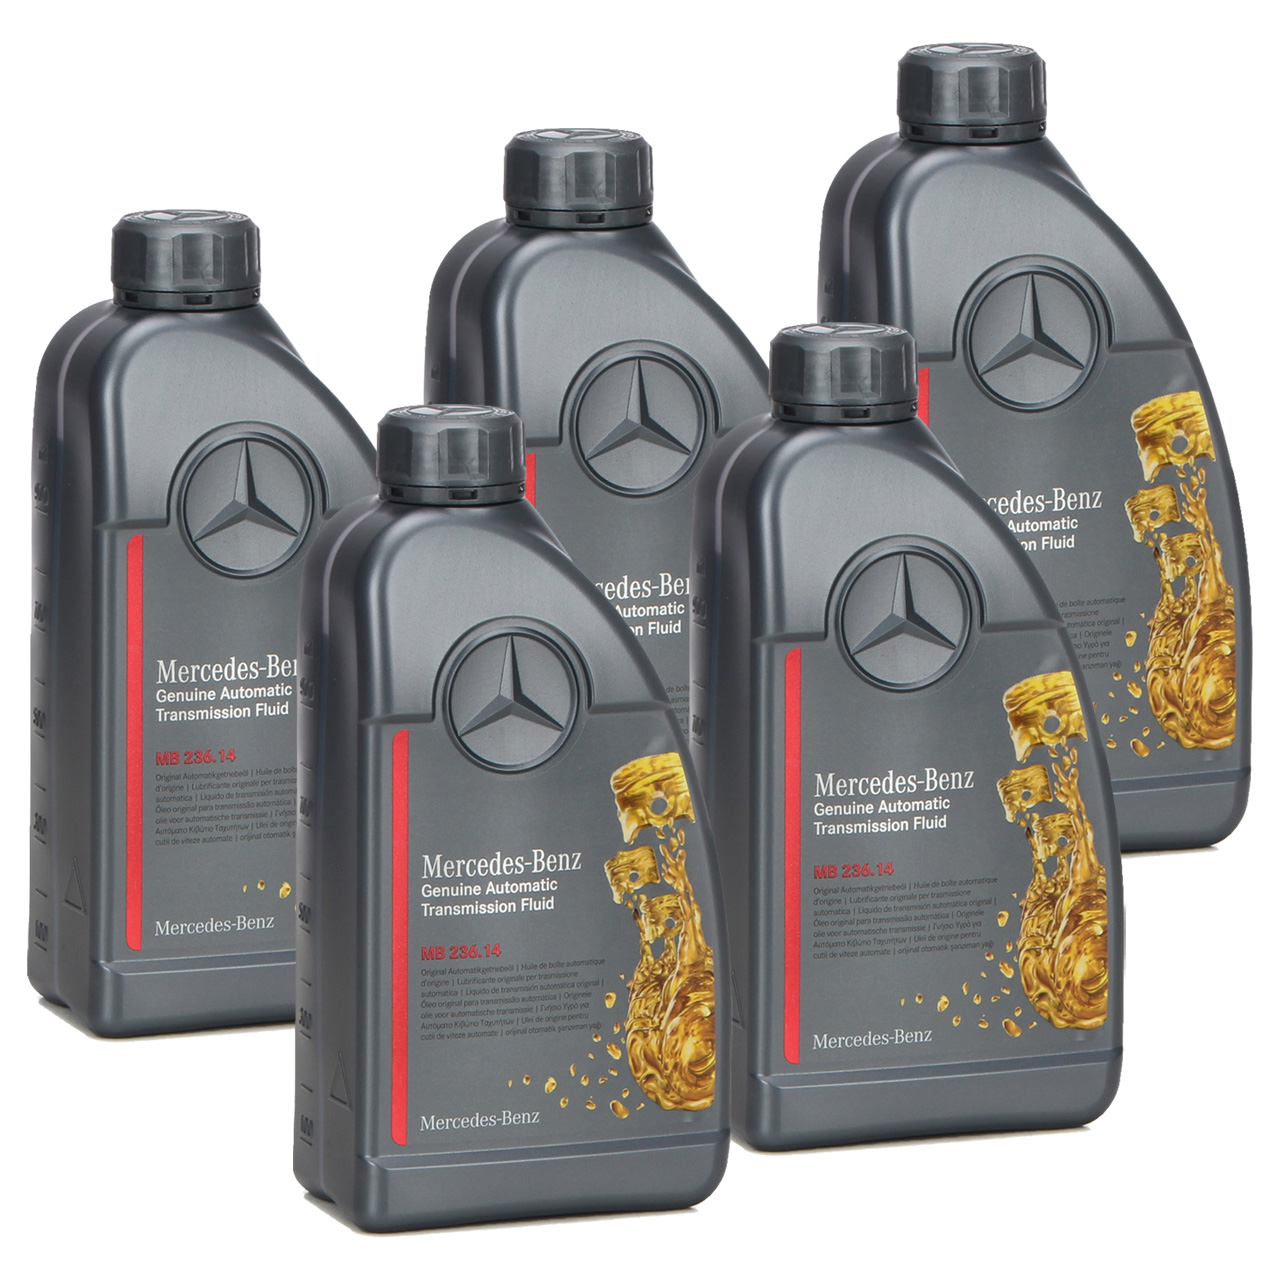 5L 5 Liter ORIGINAL Mercedes-Benz Automatikgetriebeöl MB 236.14 000989680511